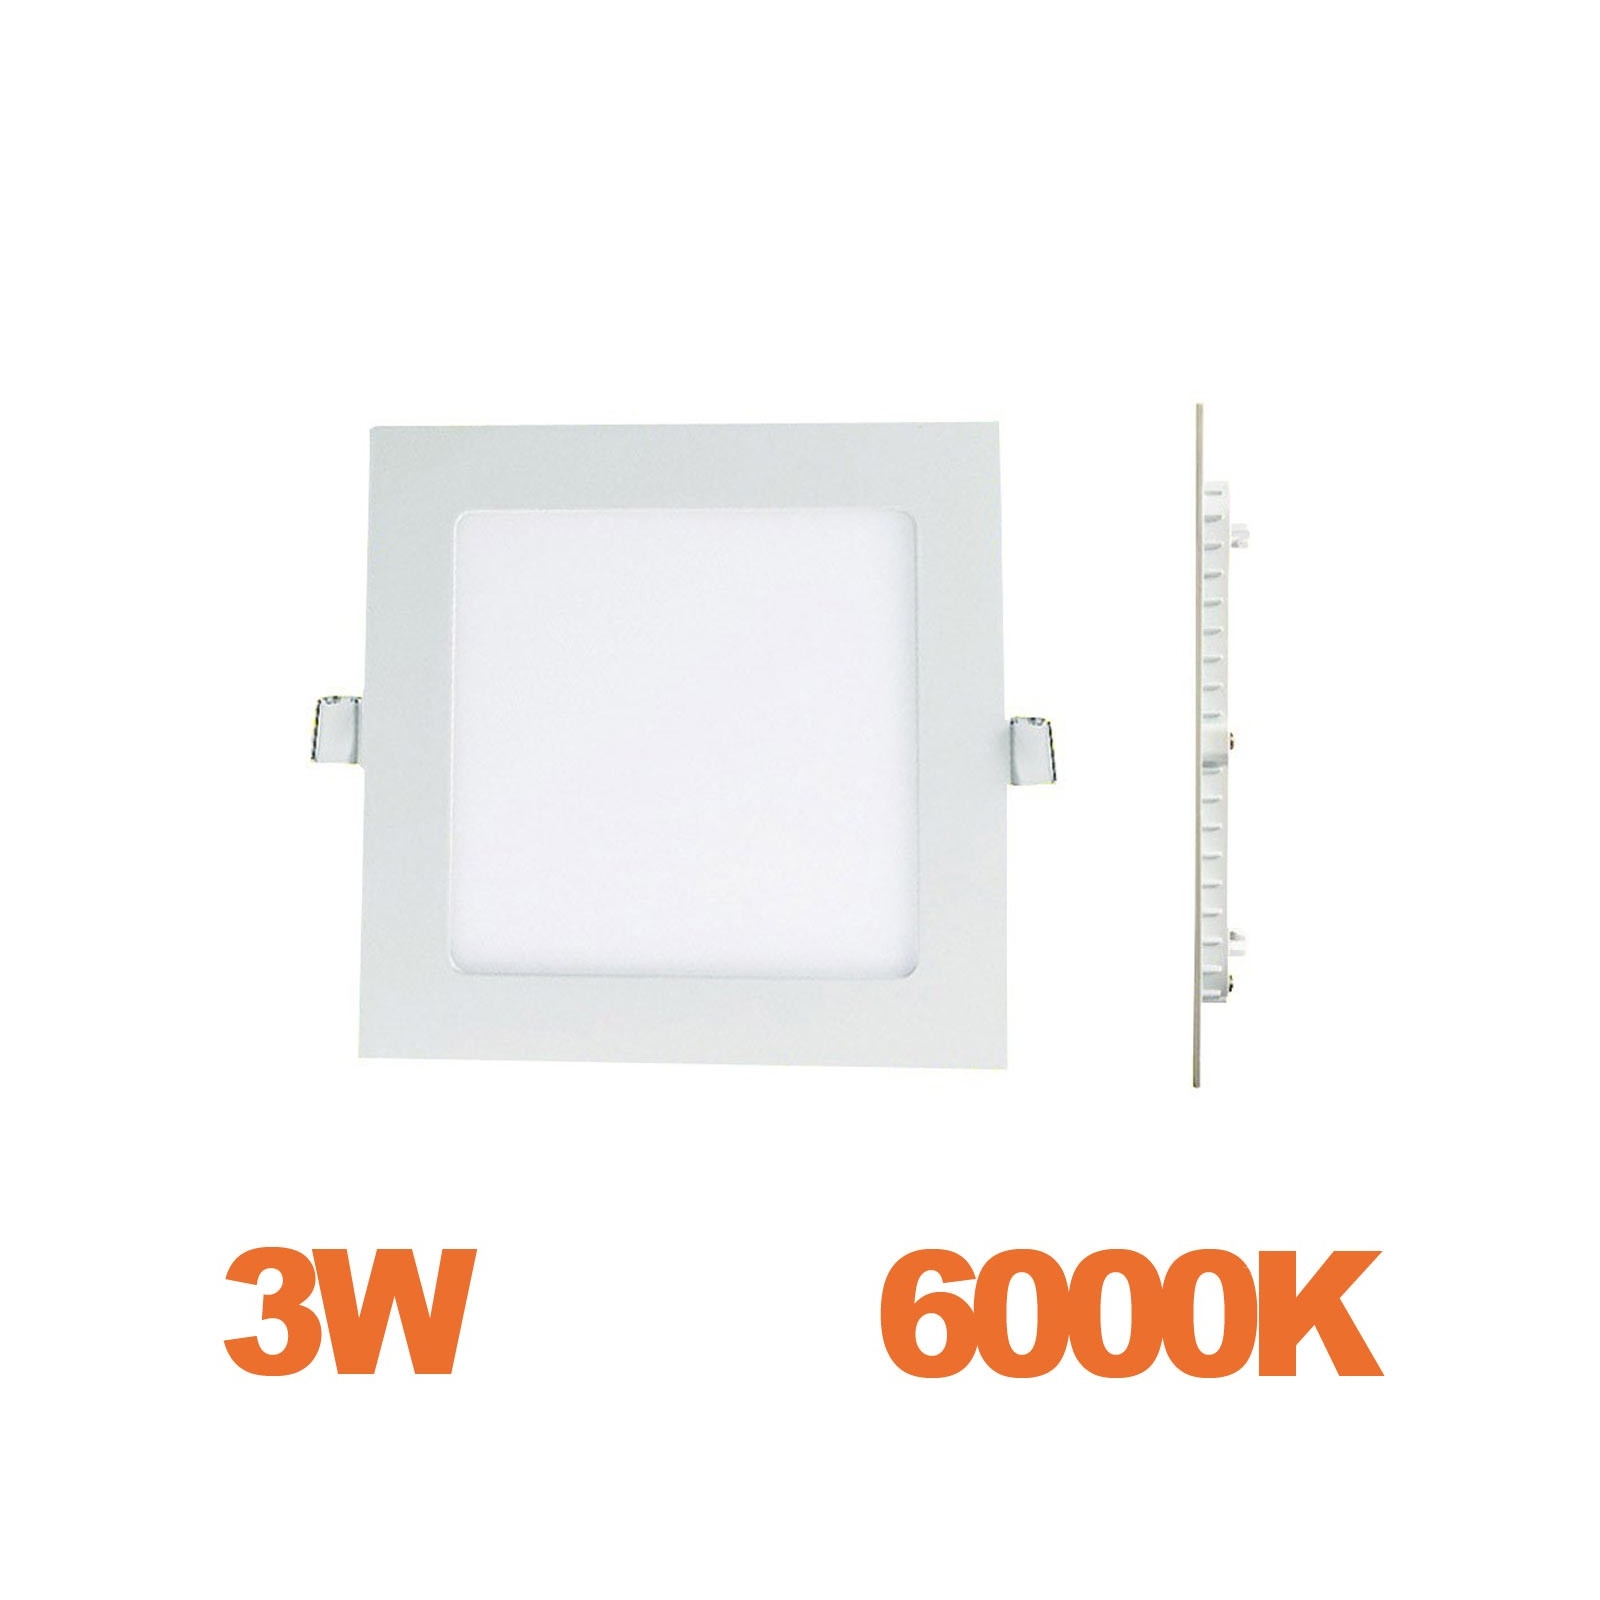 Lot de x10 ampoules led G9 3W blanc froid Économie d'énergie Equivalente  40W Halogène